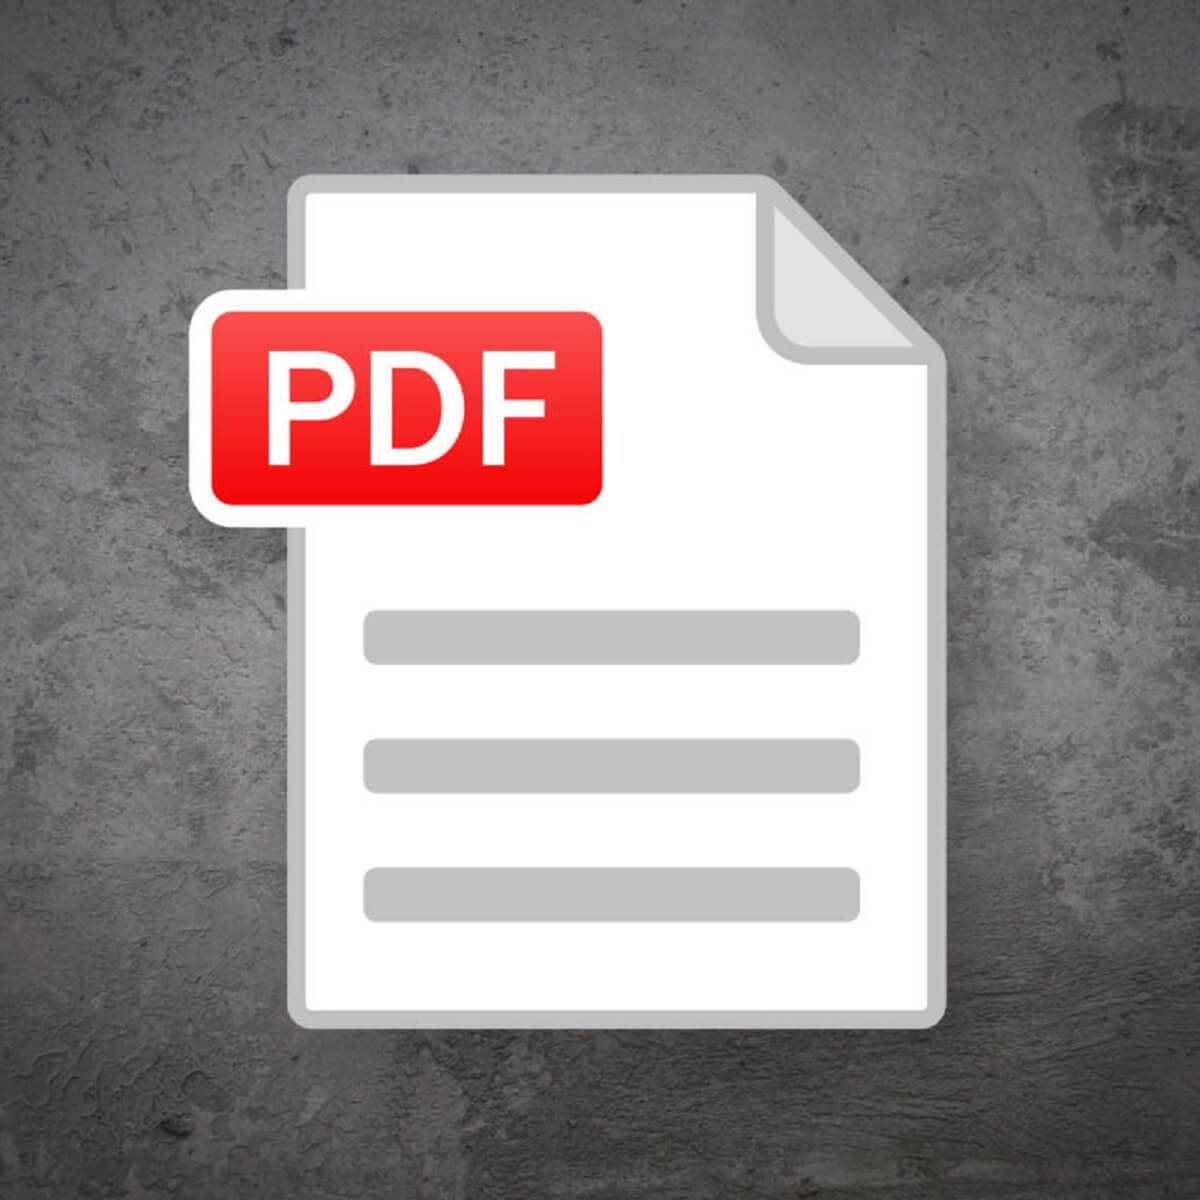 Dokumen ini mengaktifkan fitur-fitur tambahan dalam Adobe Reader 12